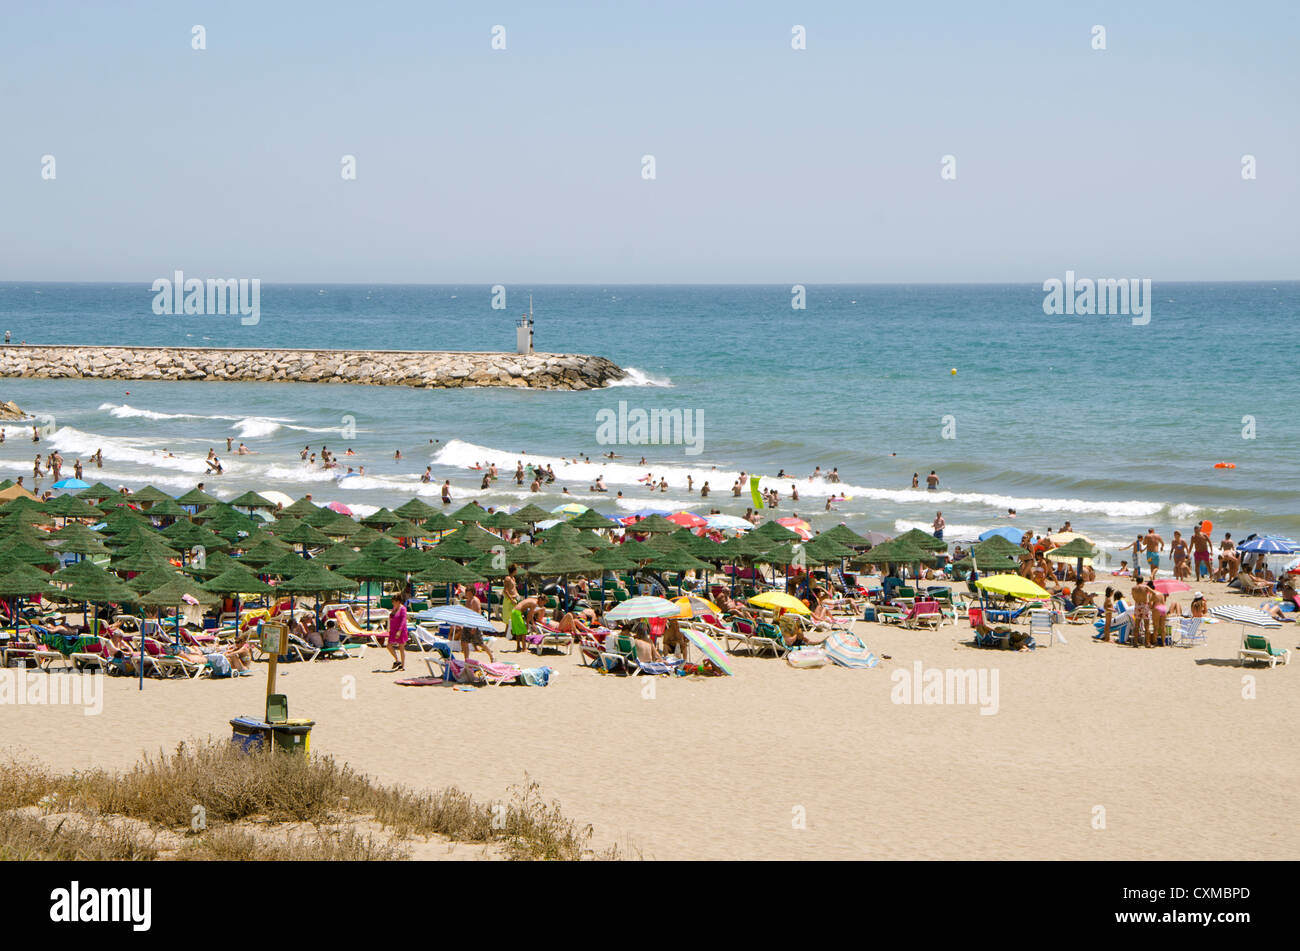 Cabopino spiaggia di Costa del sol, provincia di Malaga, Spagna. Foto Stock